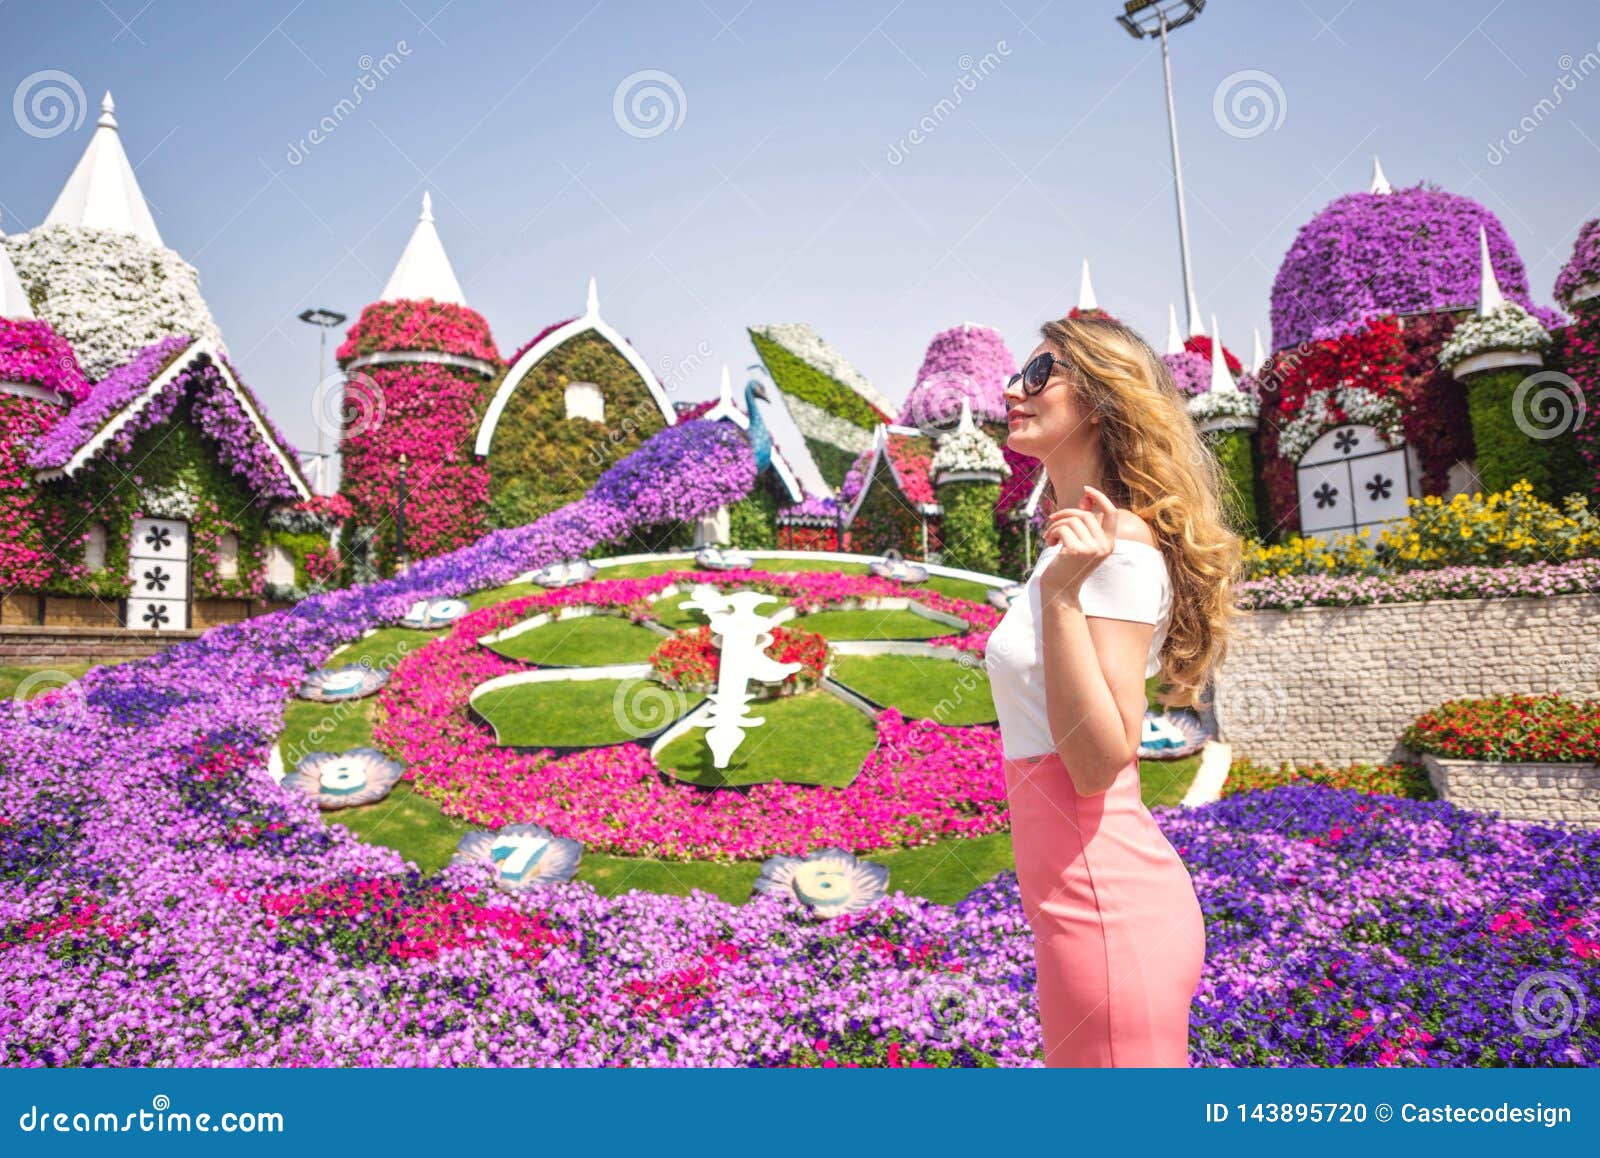 6 625 Dubai Garden Photos Free Royalty Free Stock Photos From Dreamstime